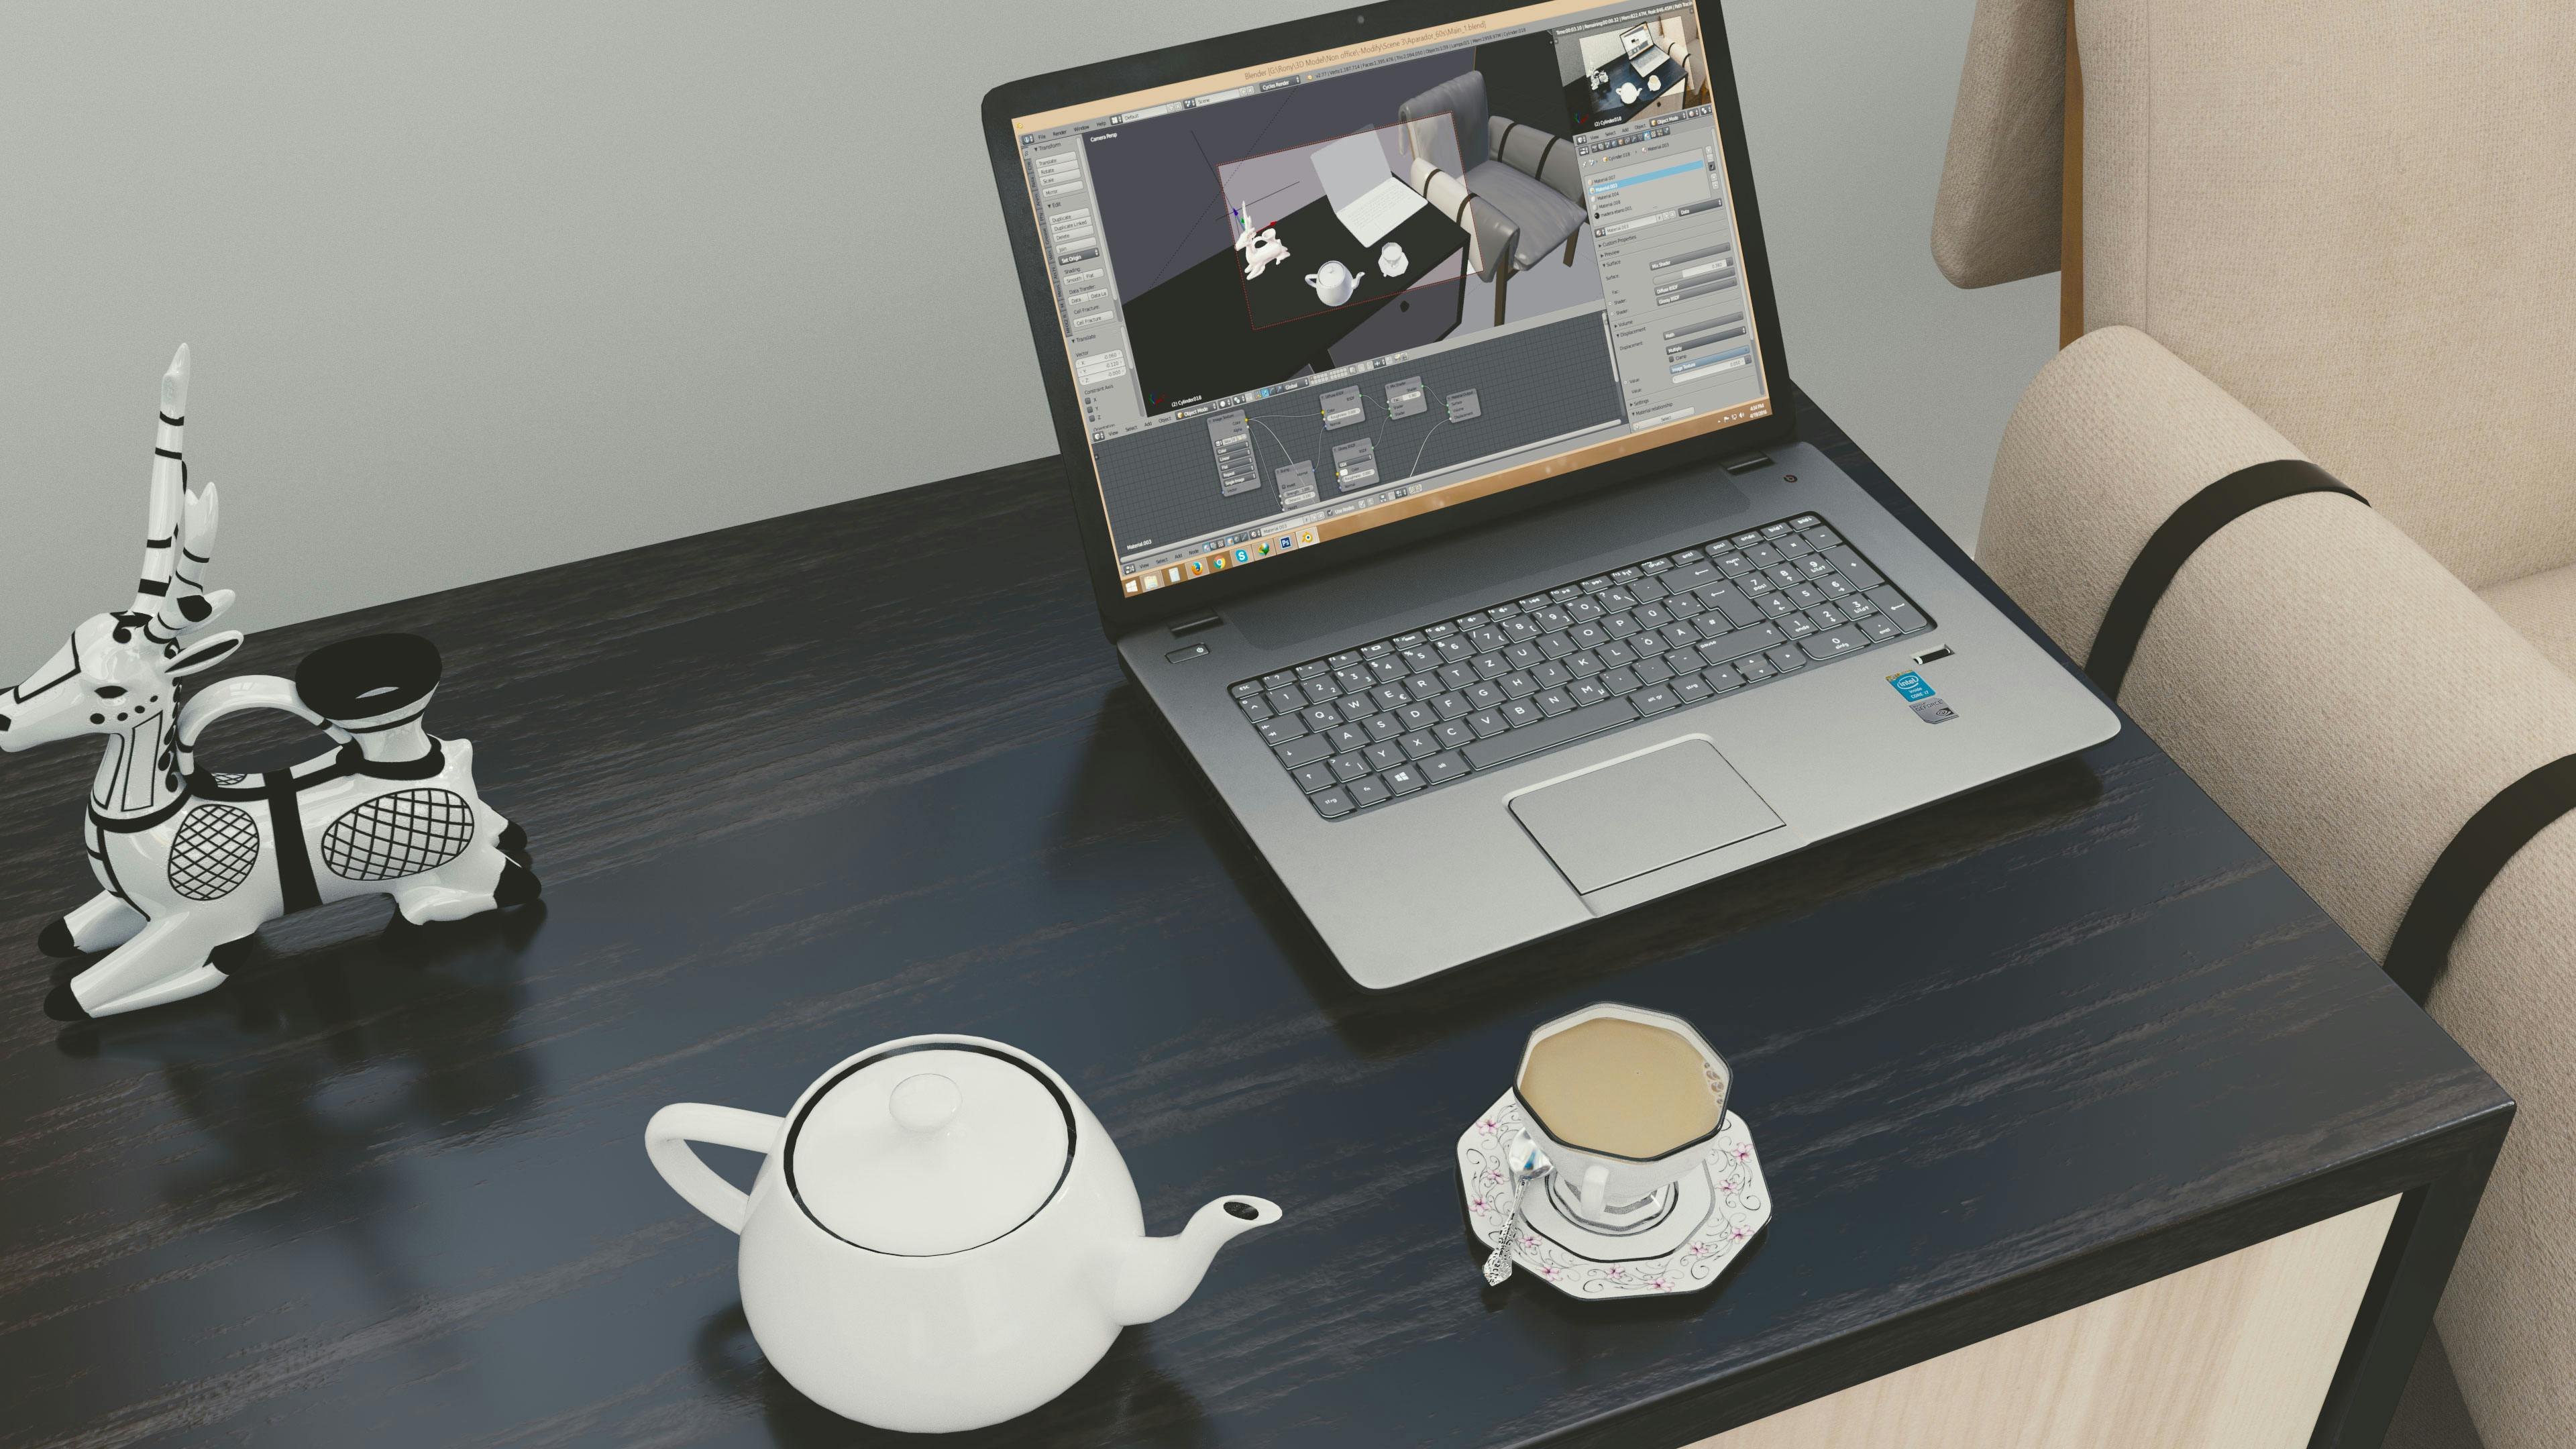 Download Gambar Hd Wallpapers of Laptop terbaru 2020